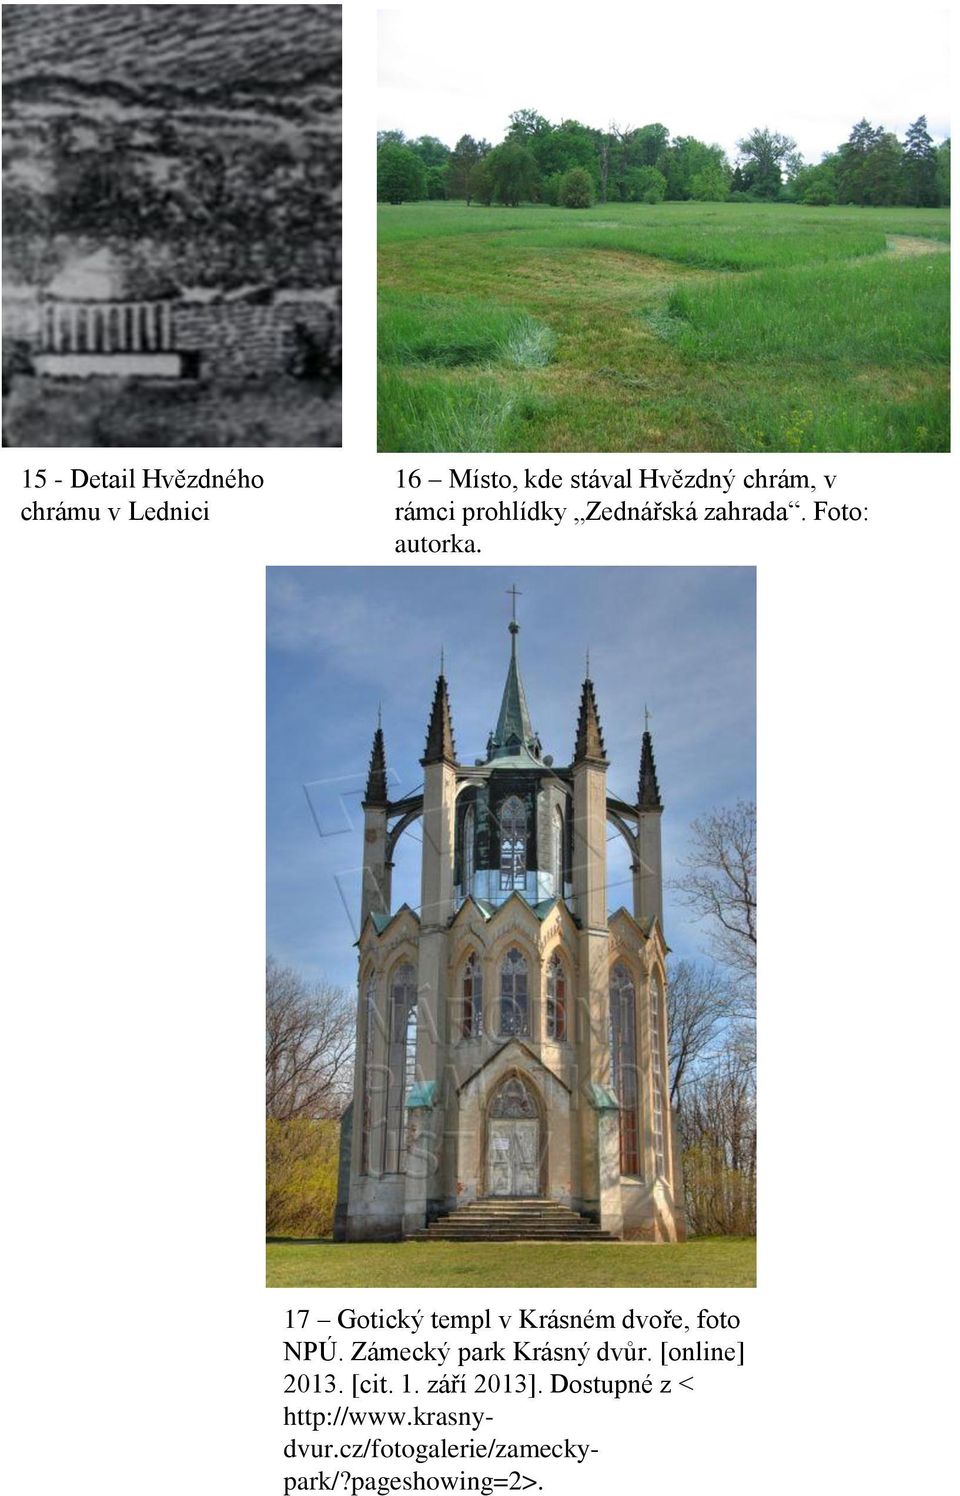 17 Gotický templ v Krásném dvoře, foto NPÚ. Zámecký park Krásný dvůr.